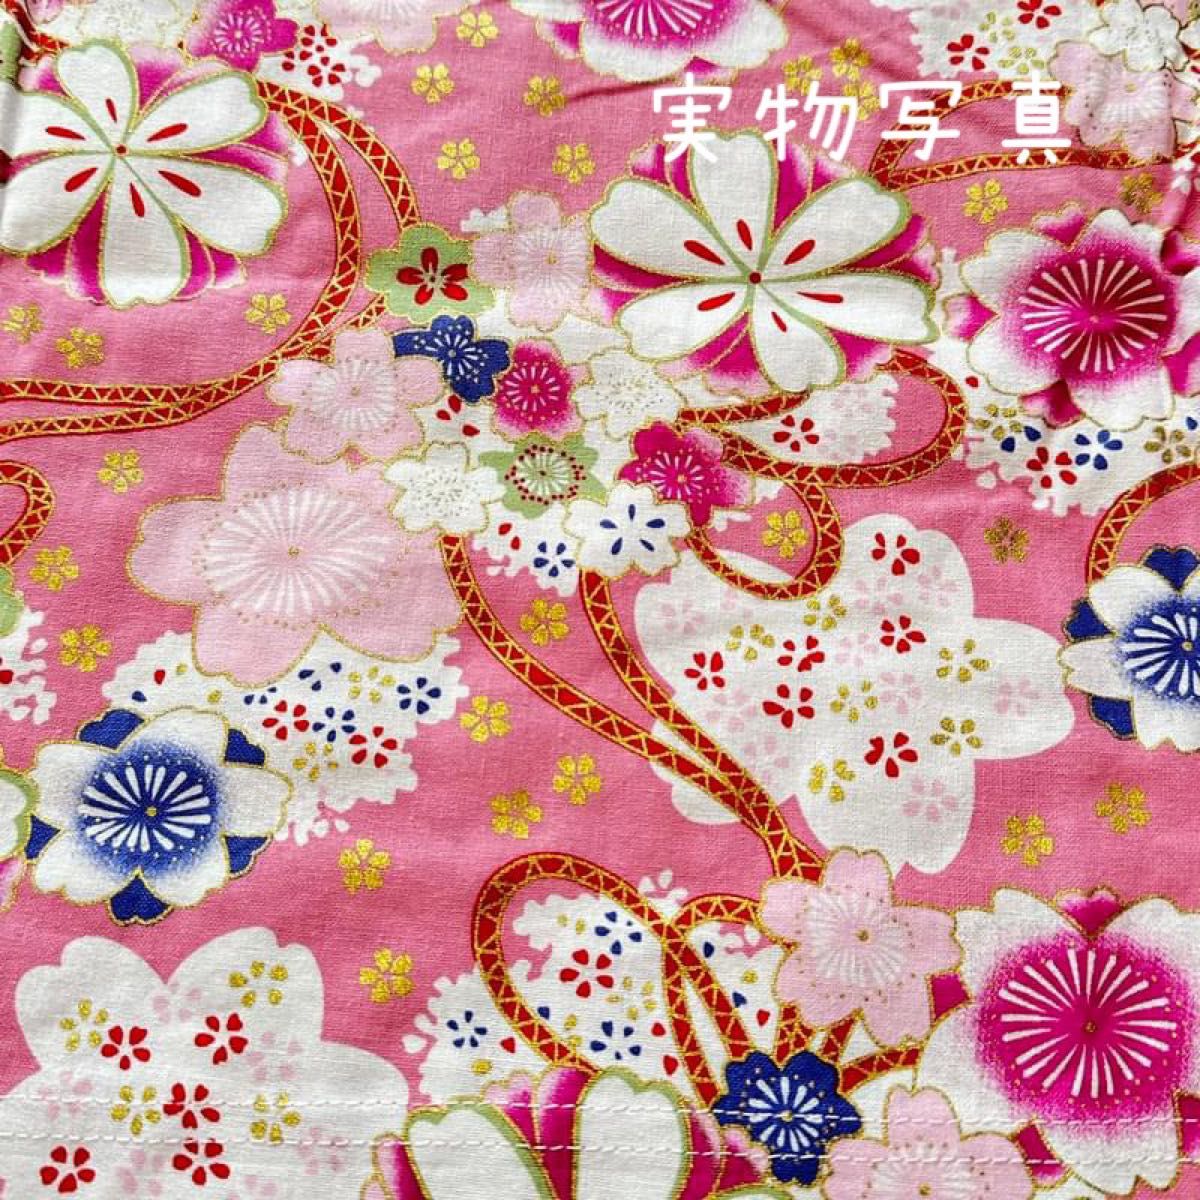  袴 セットアップ  100 桜  着物 和装 フォーマル 女の子